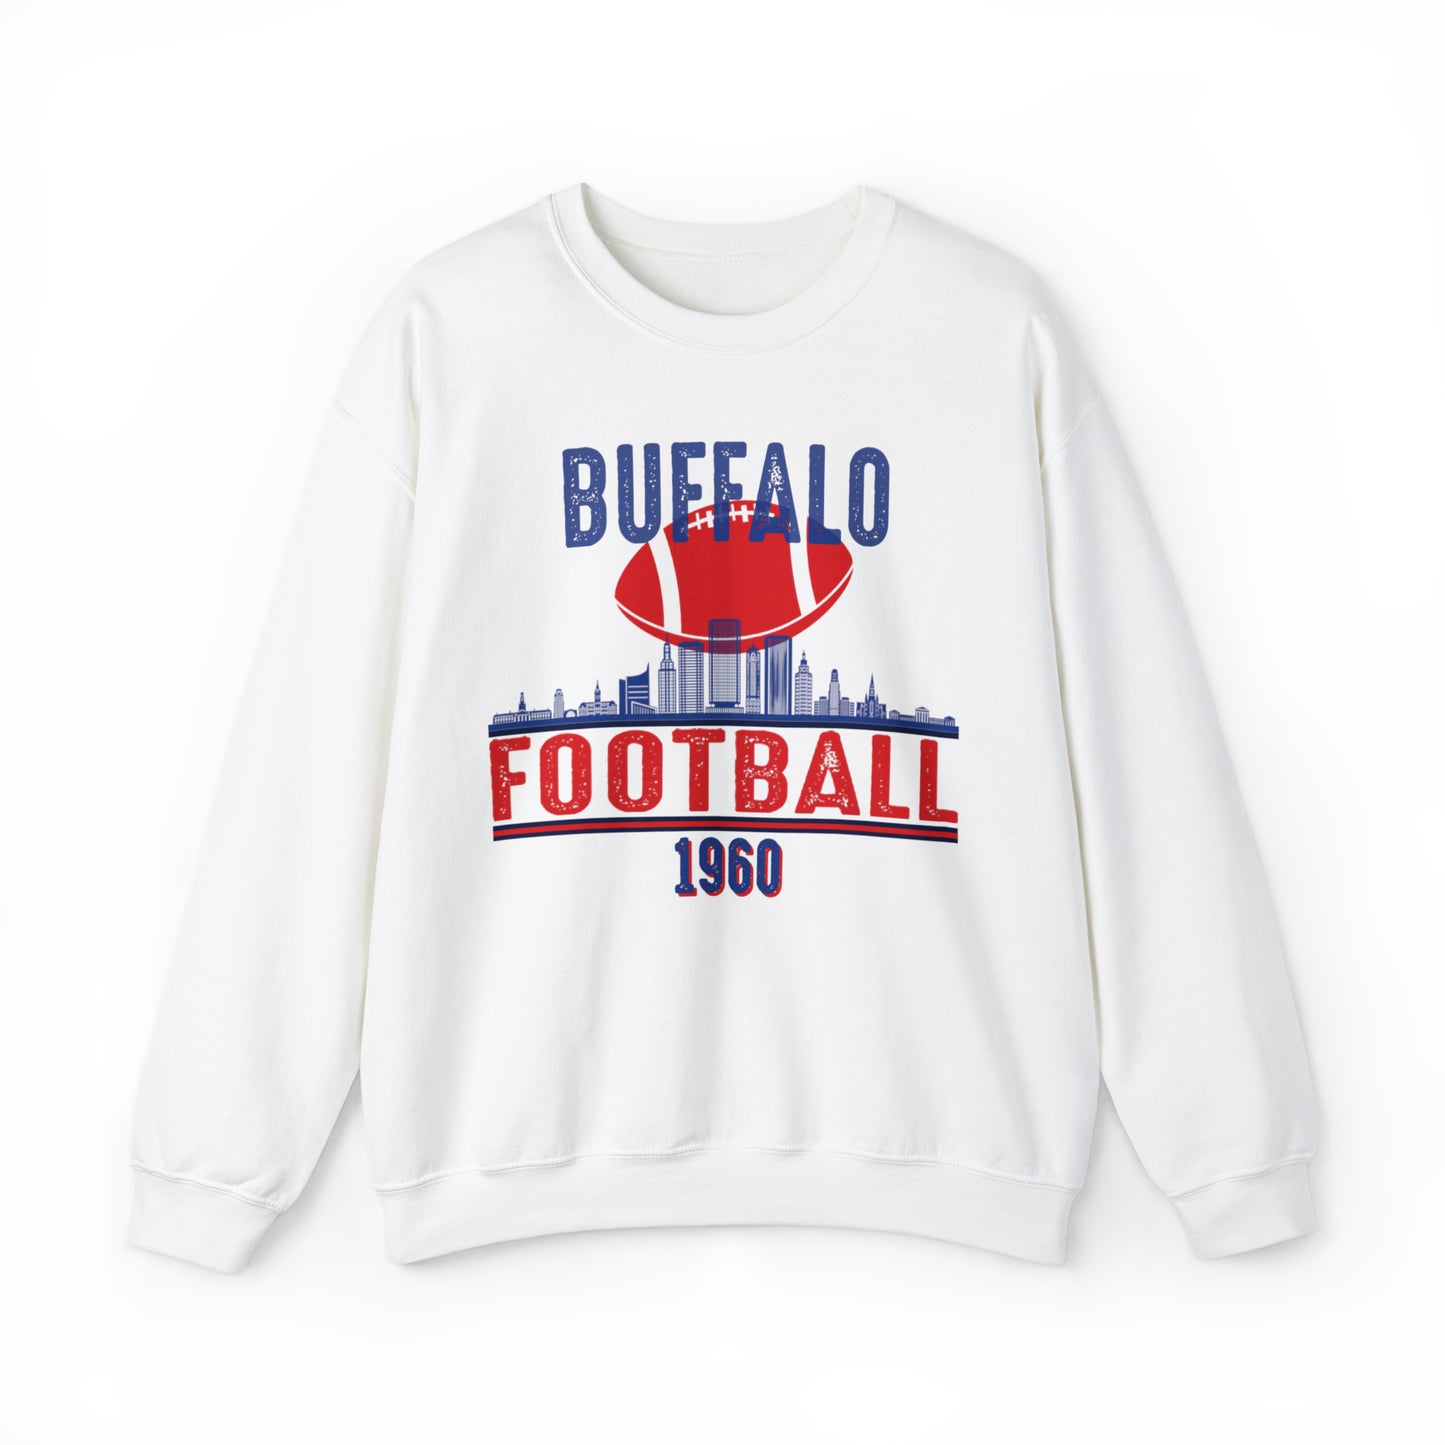 Buffalo Bills Football Sweatshirt